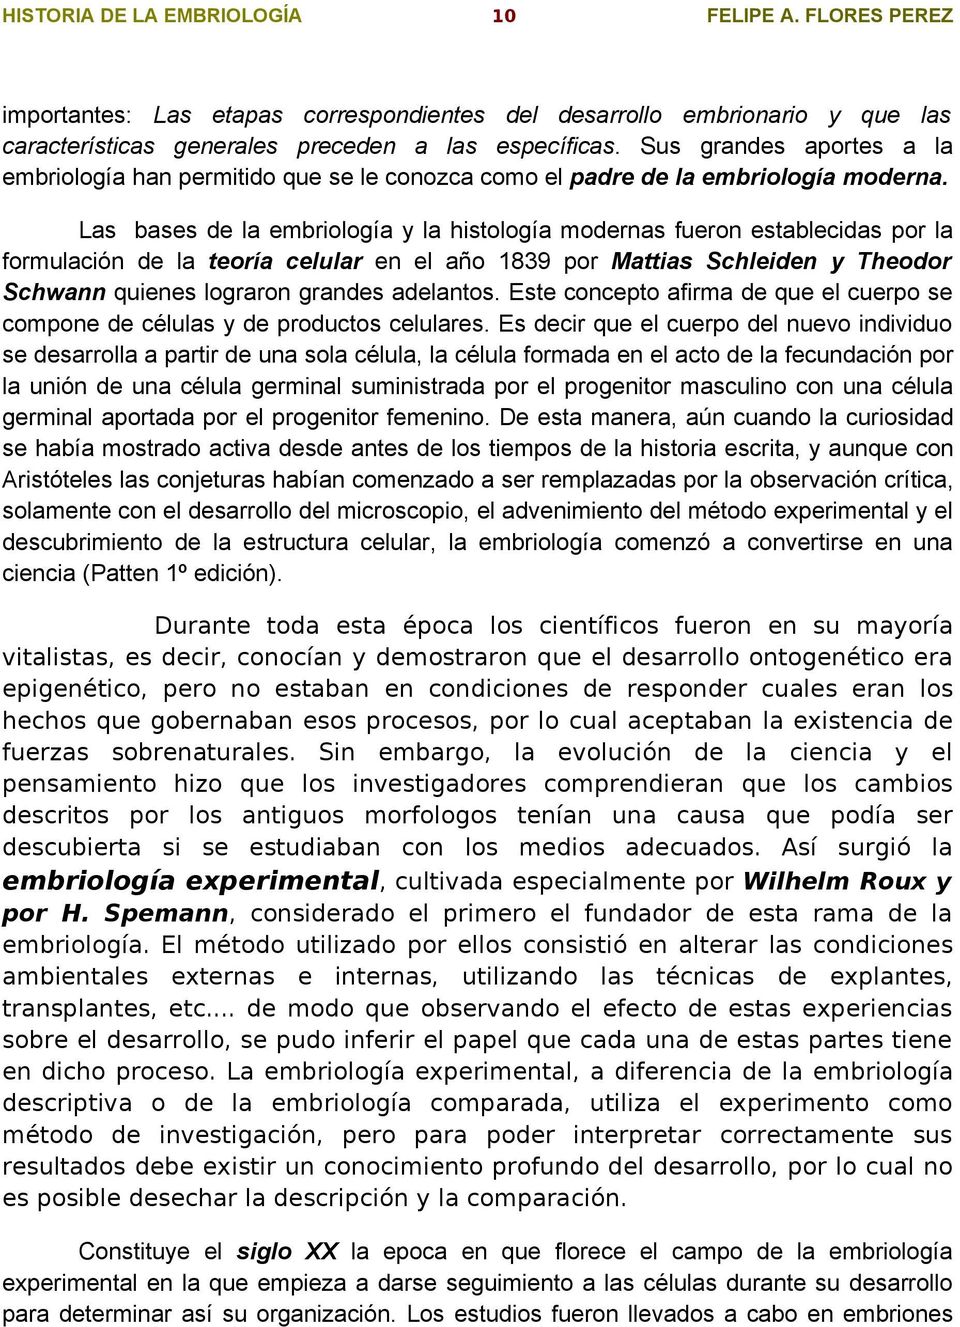 Felipe A. Flores Pérez HISTORIA DE LA EMBRIOLOGÍA 1 FELIPE A. FLORES PEREZ  - PDF Descargar libre